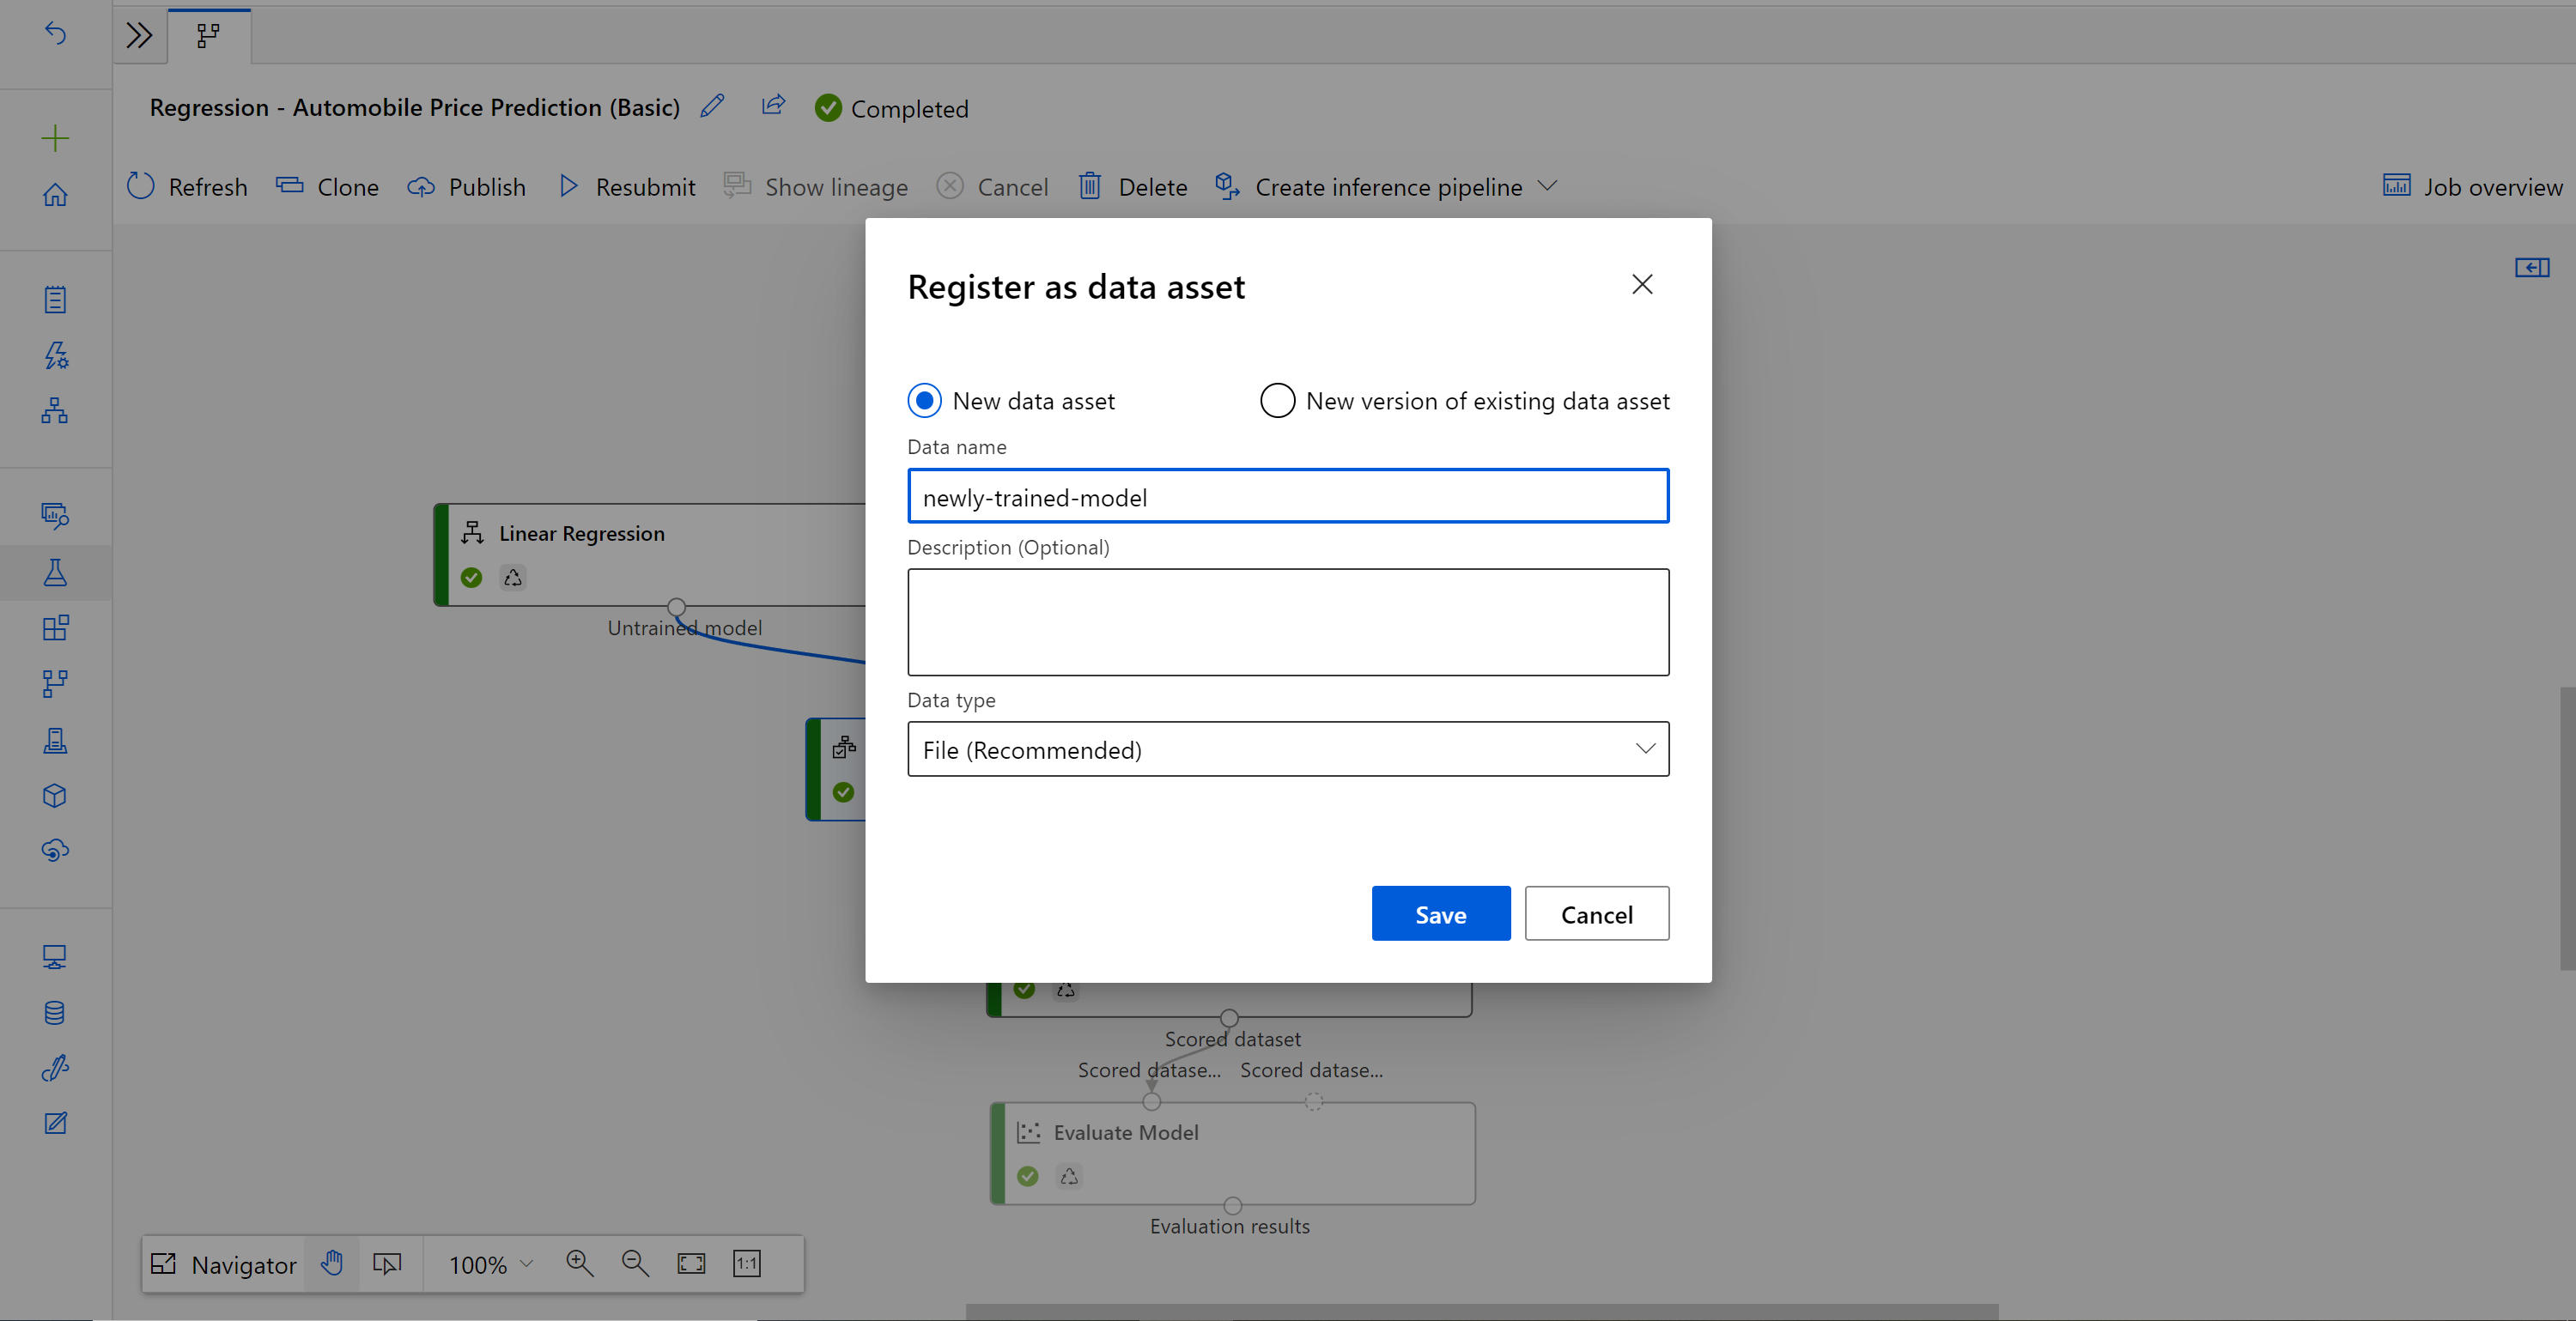 Screenshot della registrazione come asset di dati con il nuovo asset di dati selezionato.